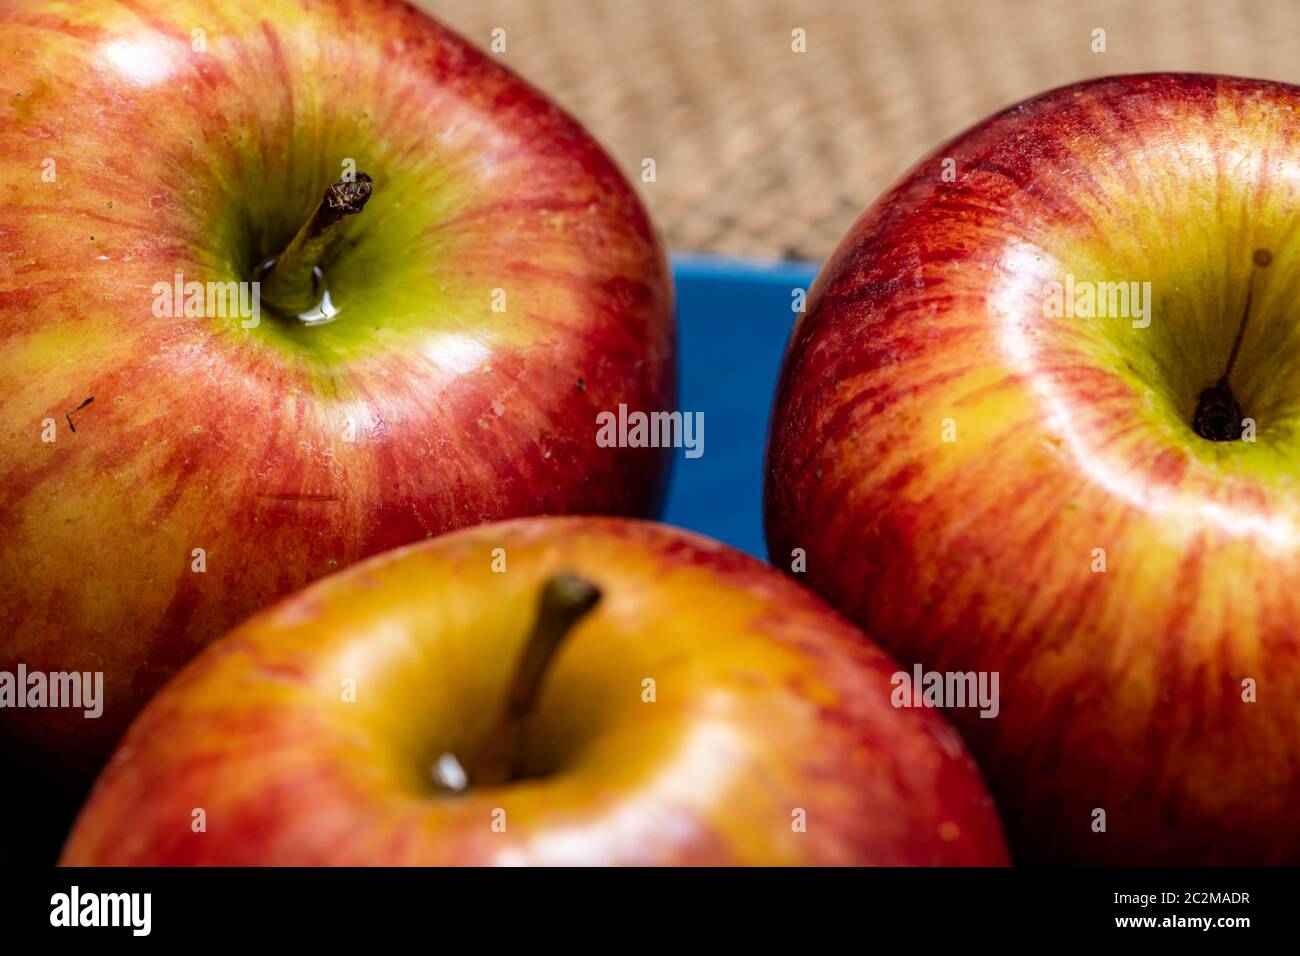 Pommes riches en bois affectées prêtes à manger Banque D'Images